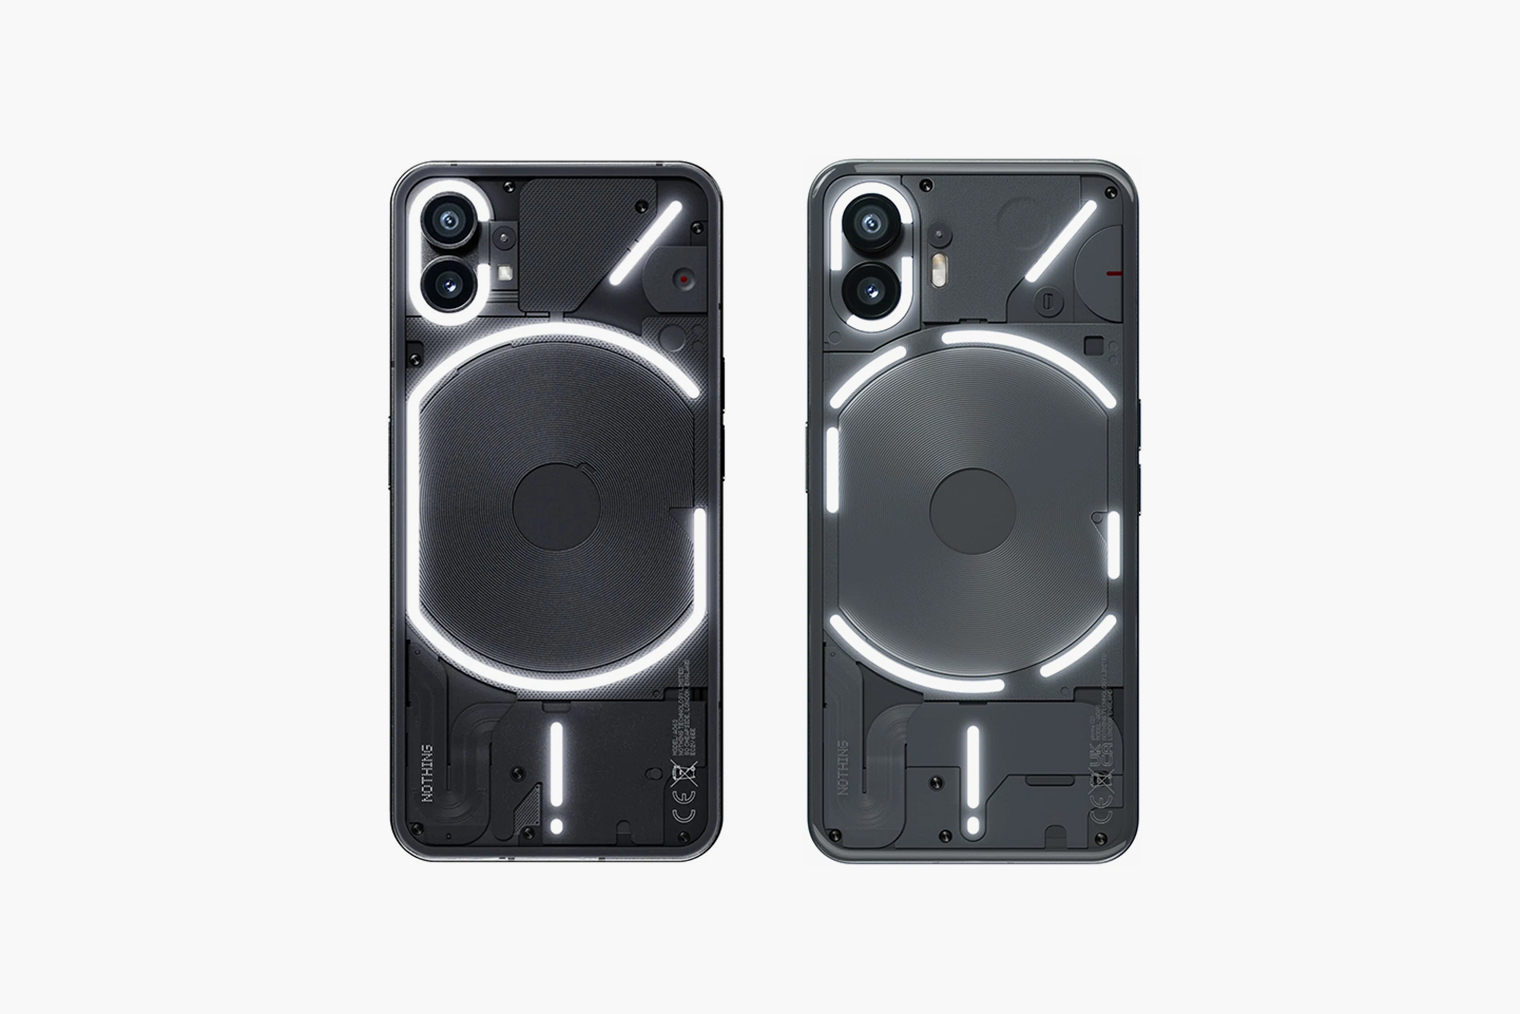 Задние панели у Nothing Phone (1) и (2) выглядят похоже. Но присмотревшись, можно заметить различия. Слева — первое поколение, справа — новая модель